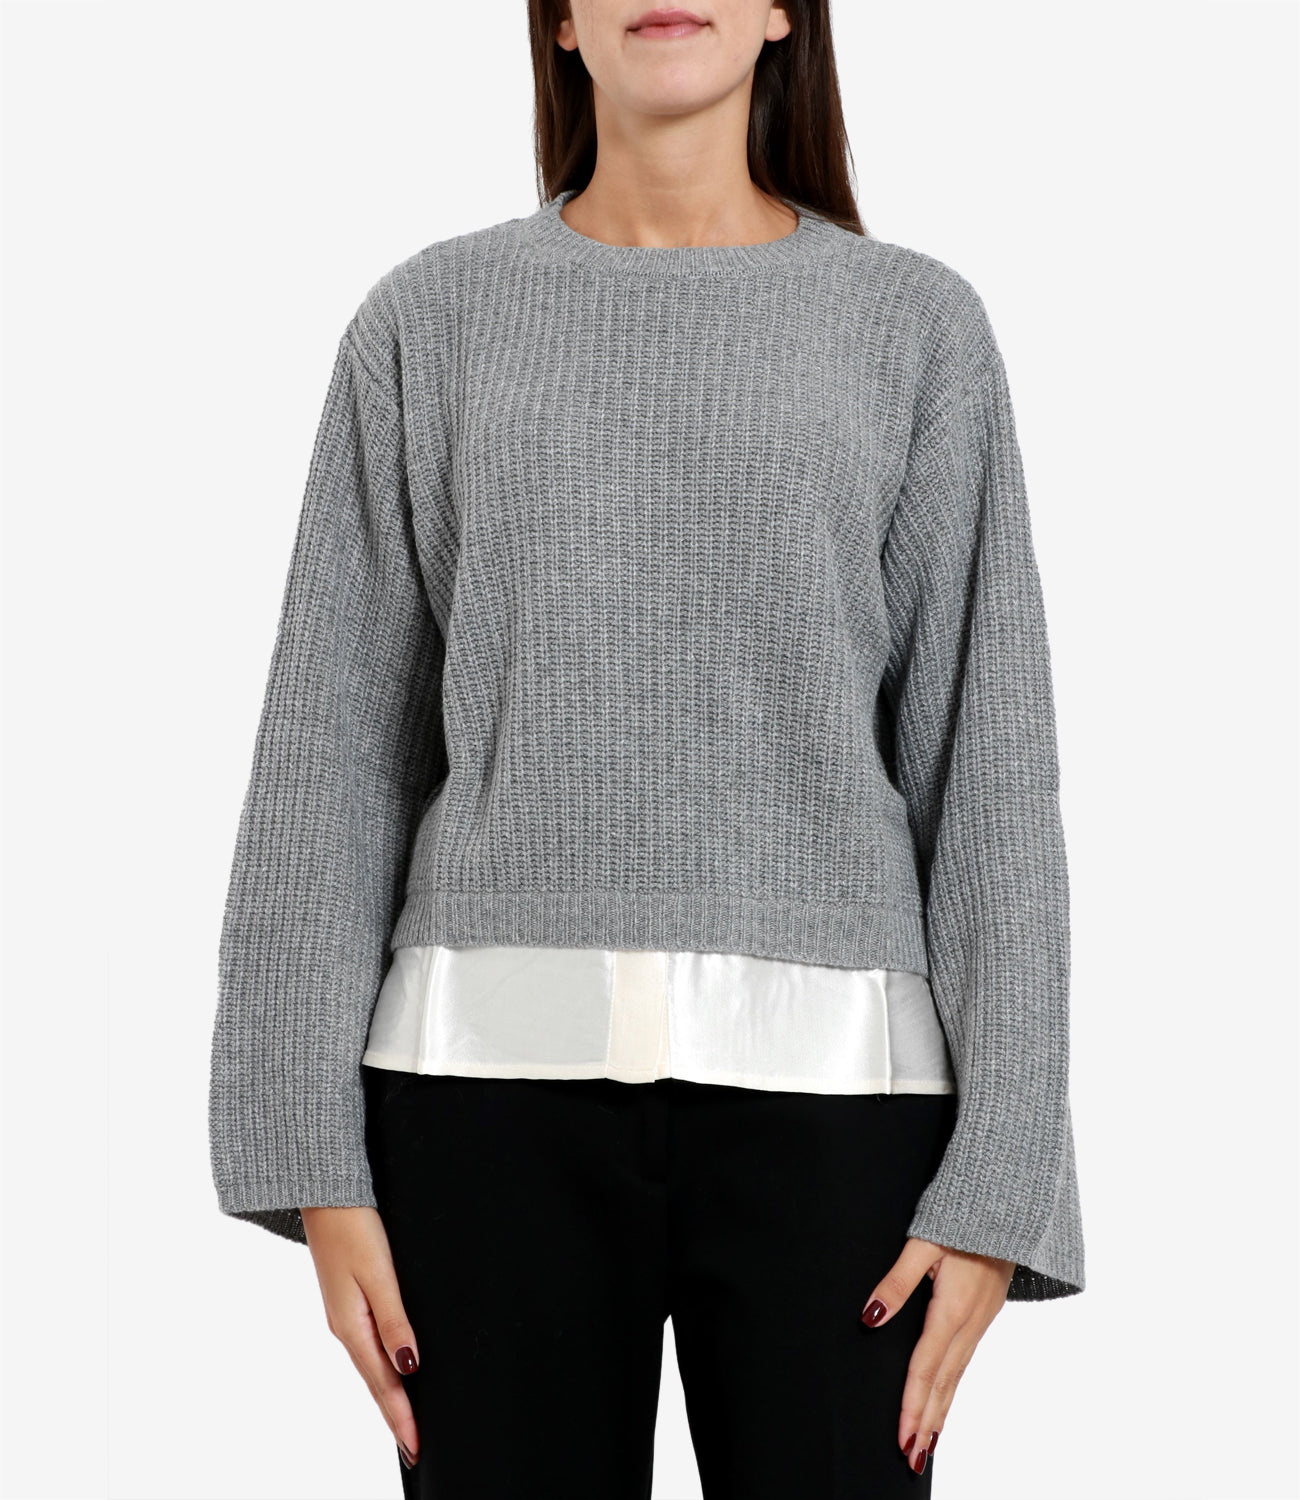 Kaos | Medium Grey Sweater